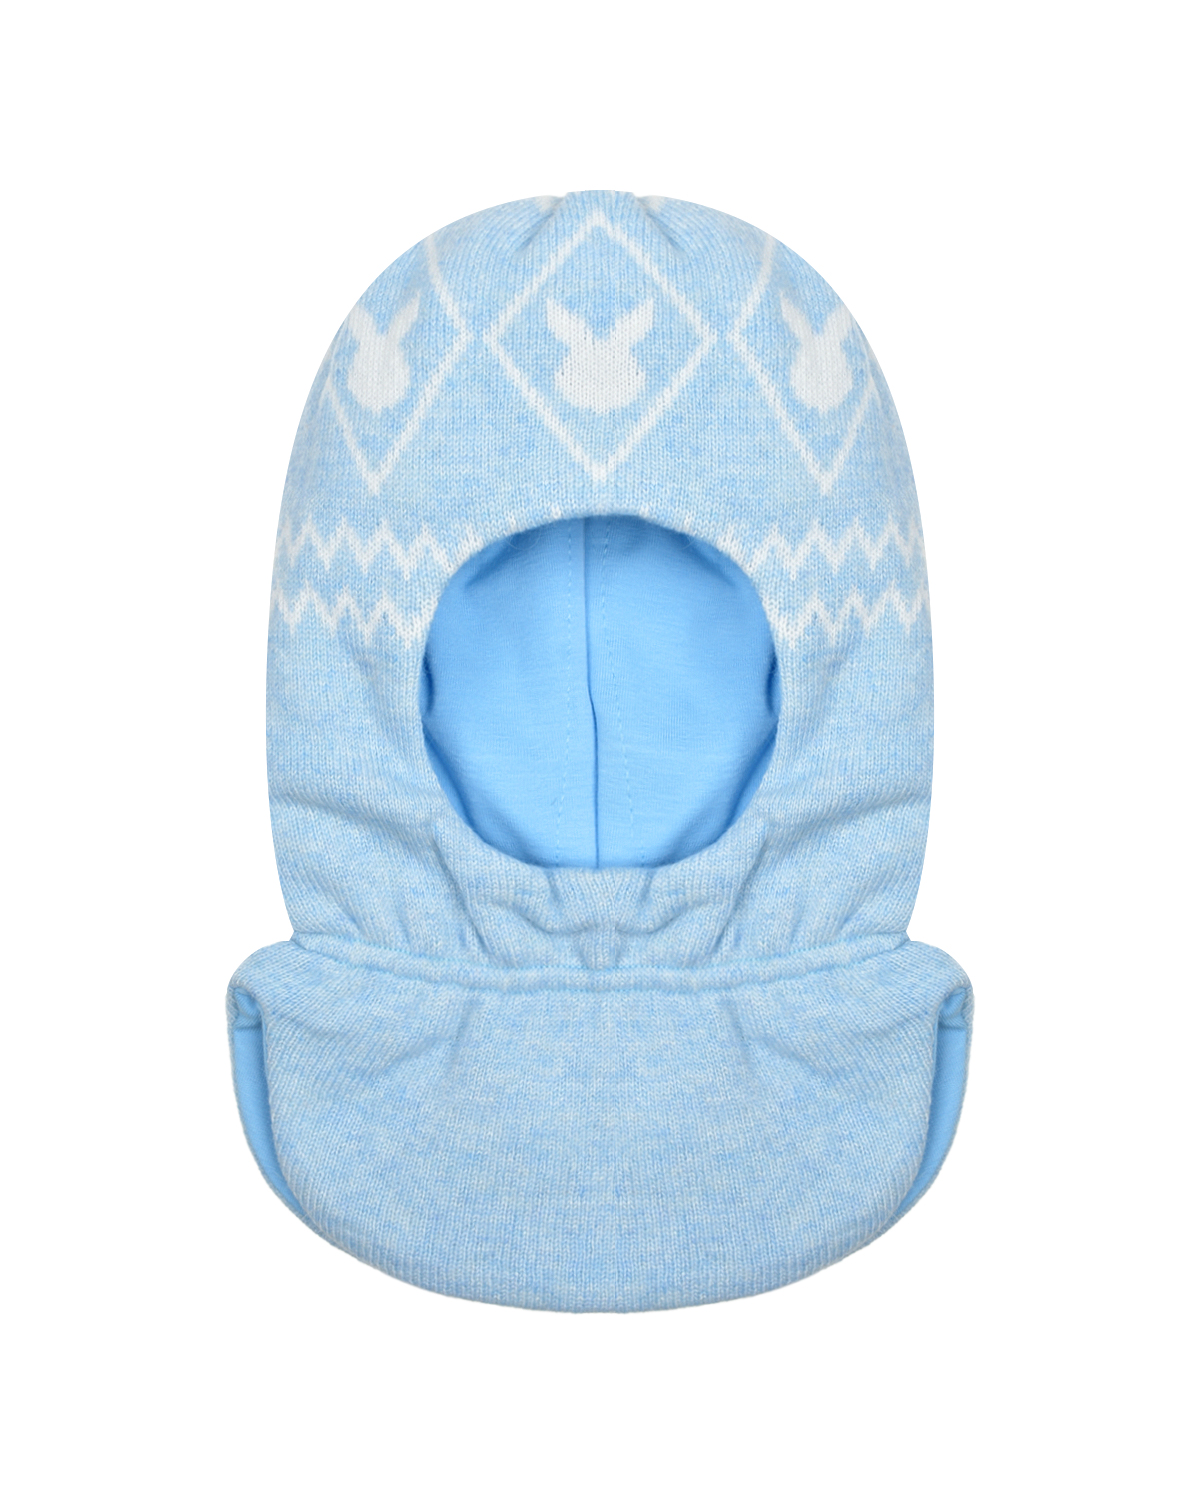 Голубая шапка-шлем с принтом "белые зайцы" Chobi детская, размер 45, цвет голубой